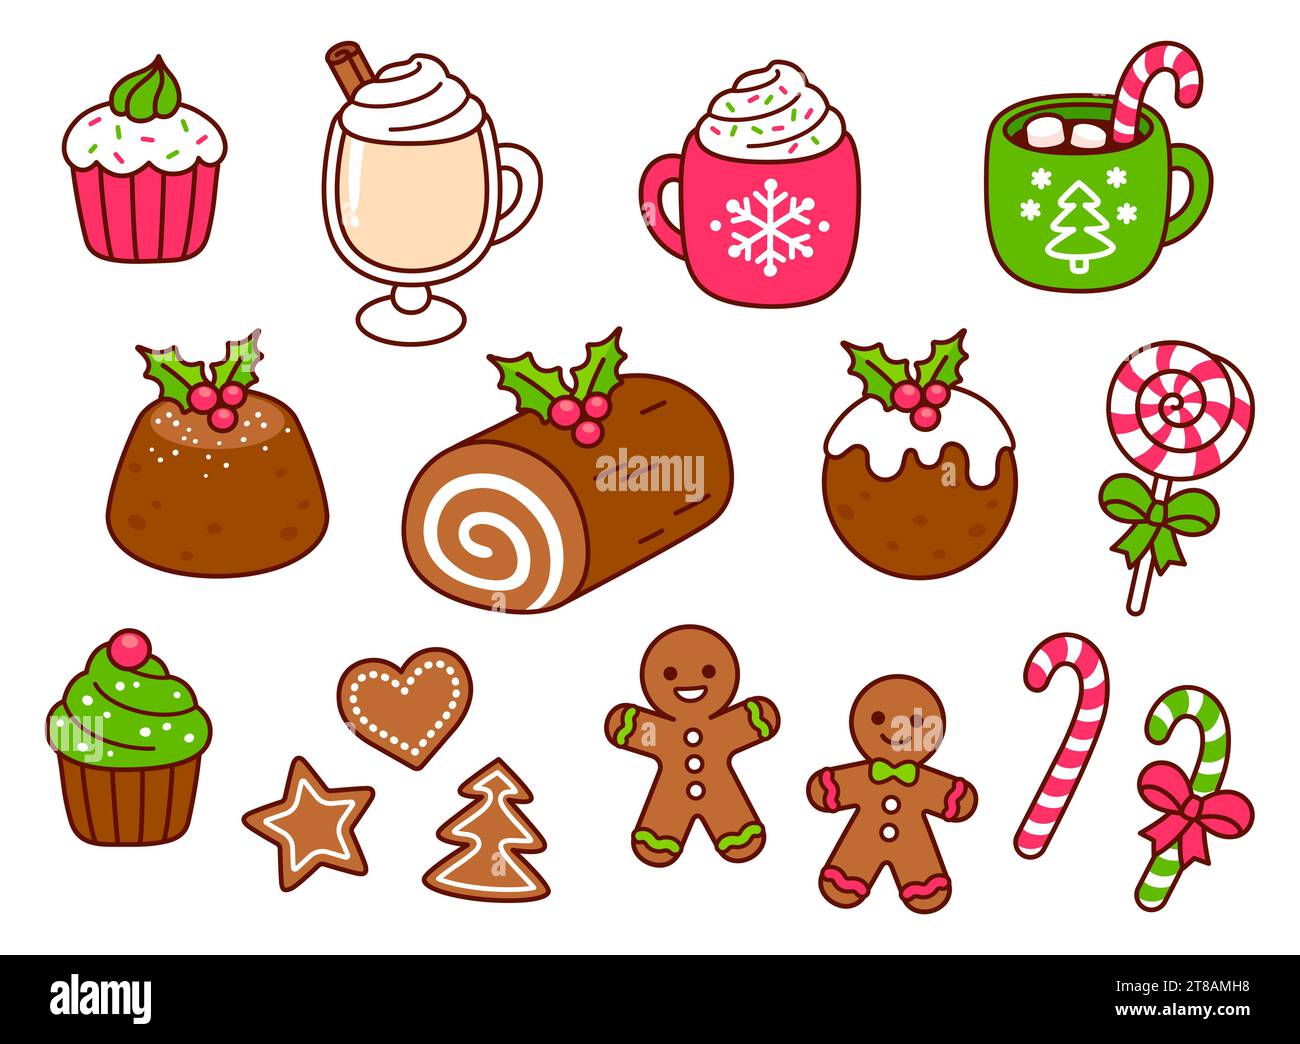 Traditionelles Weihnachtsessen: Desserts, Getränke, Kekse und Süßigkeiten. Kawaii handgezeichnete Kritzeleien. Netter Zeichentrickvektor Illustration Set. Stock Vektor